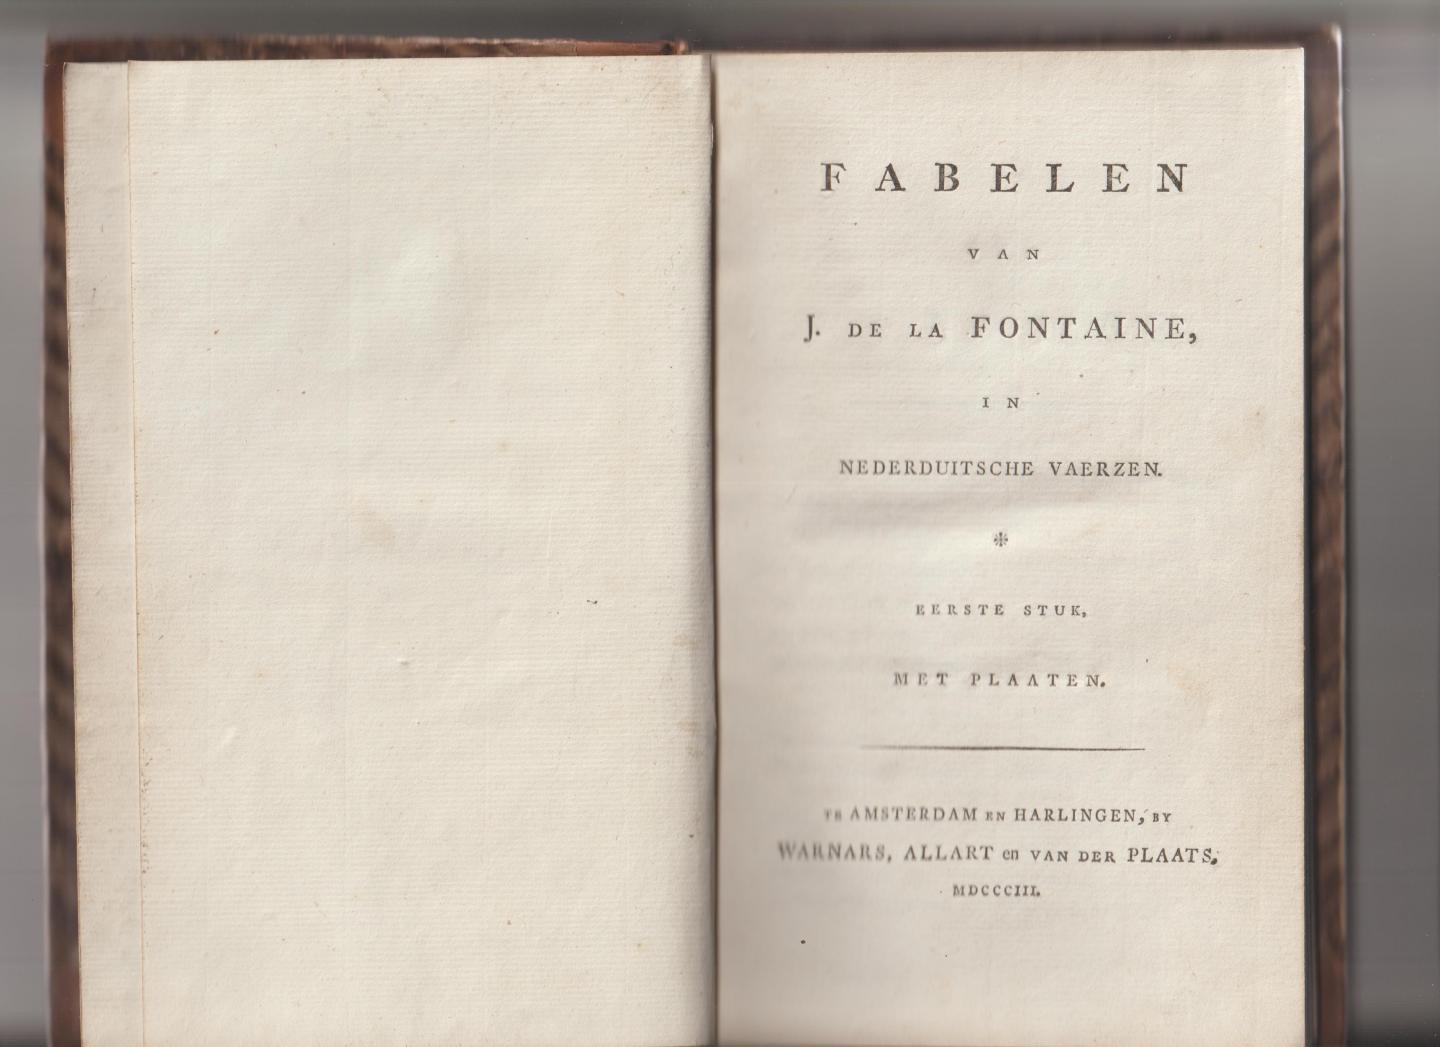 Fontaine, J. de la - Fabelen van J. de la Fontaine in Nederduische vaerzen